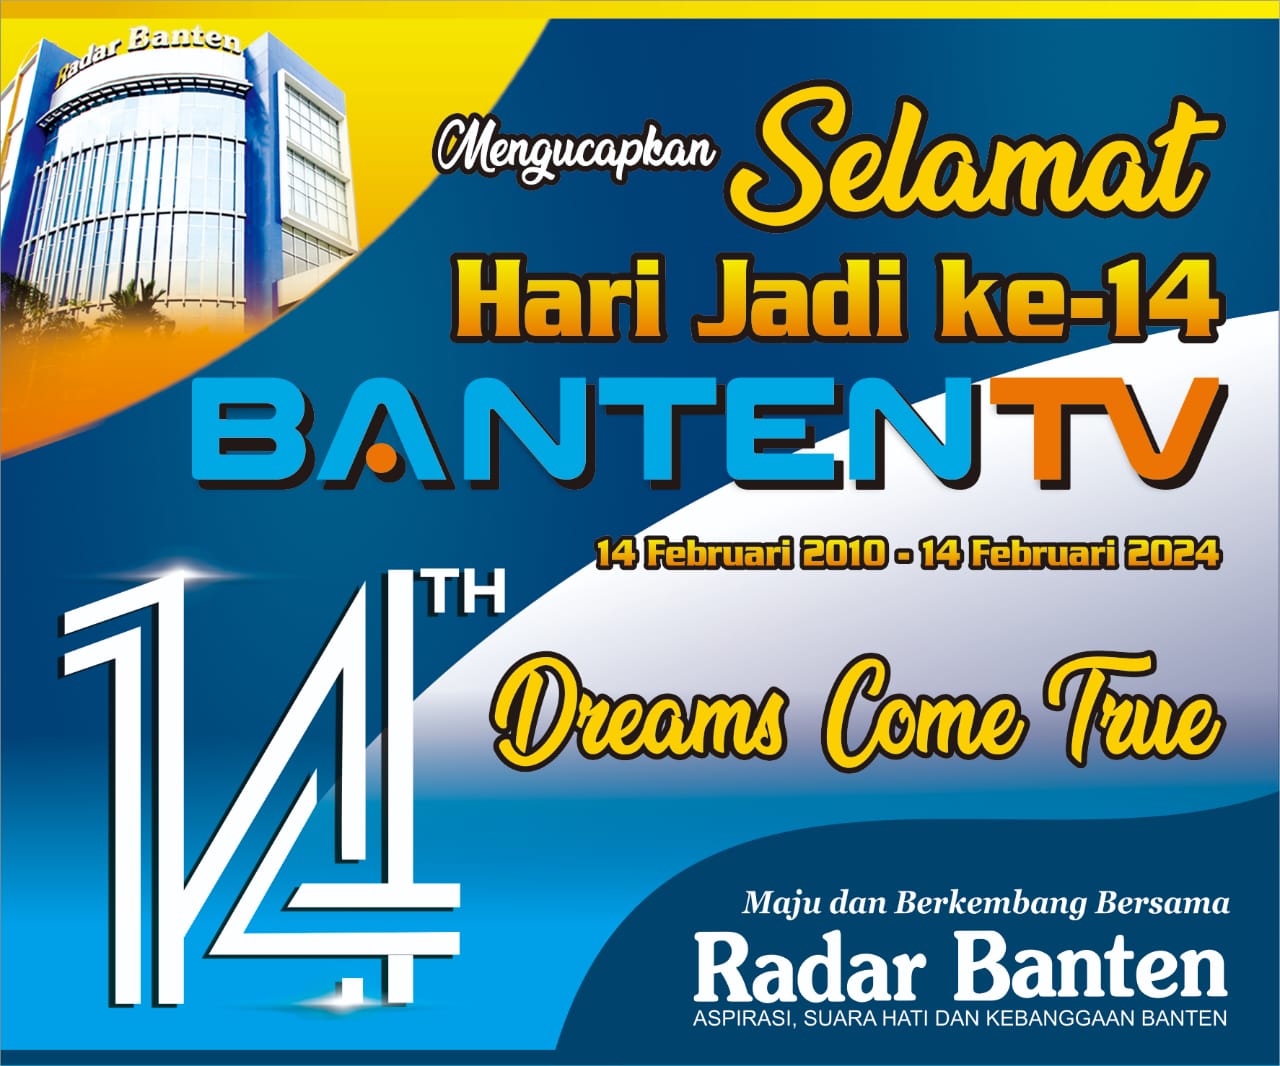 Banten TV